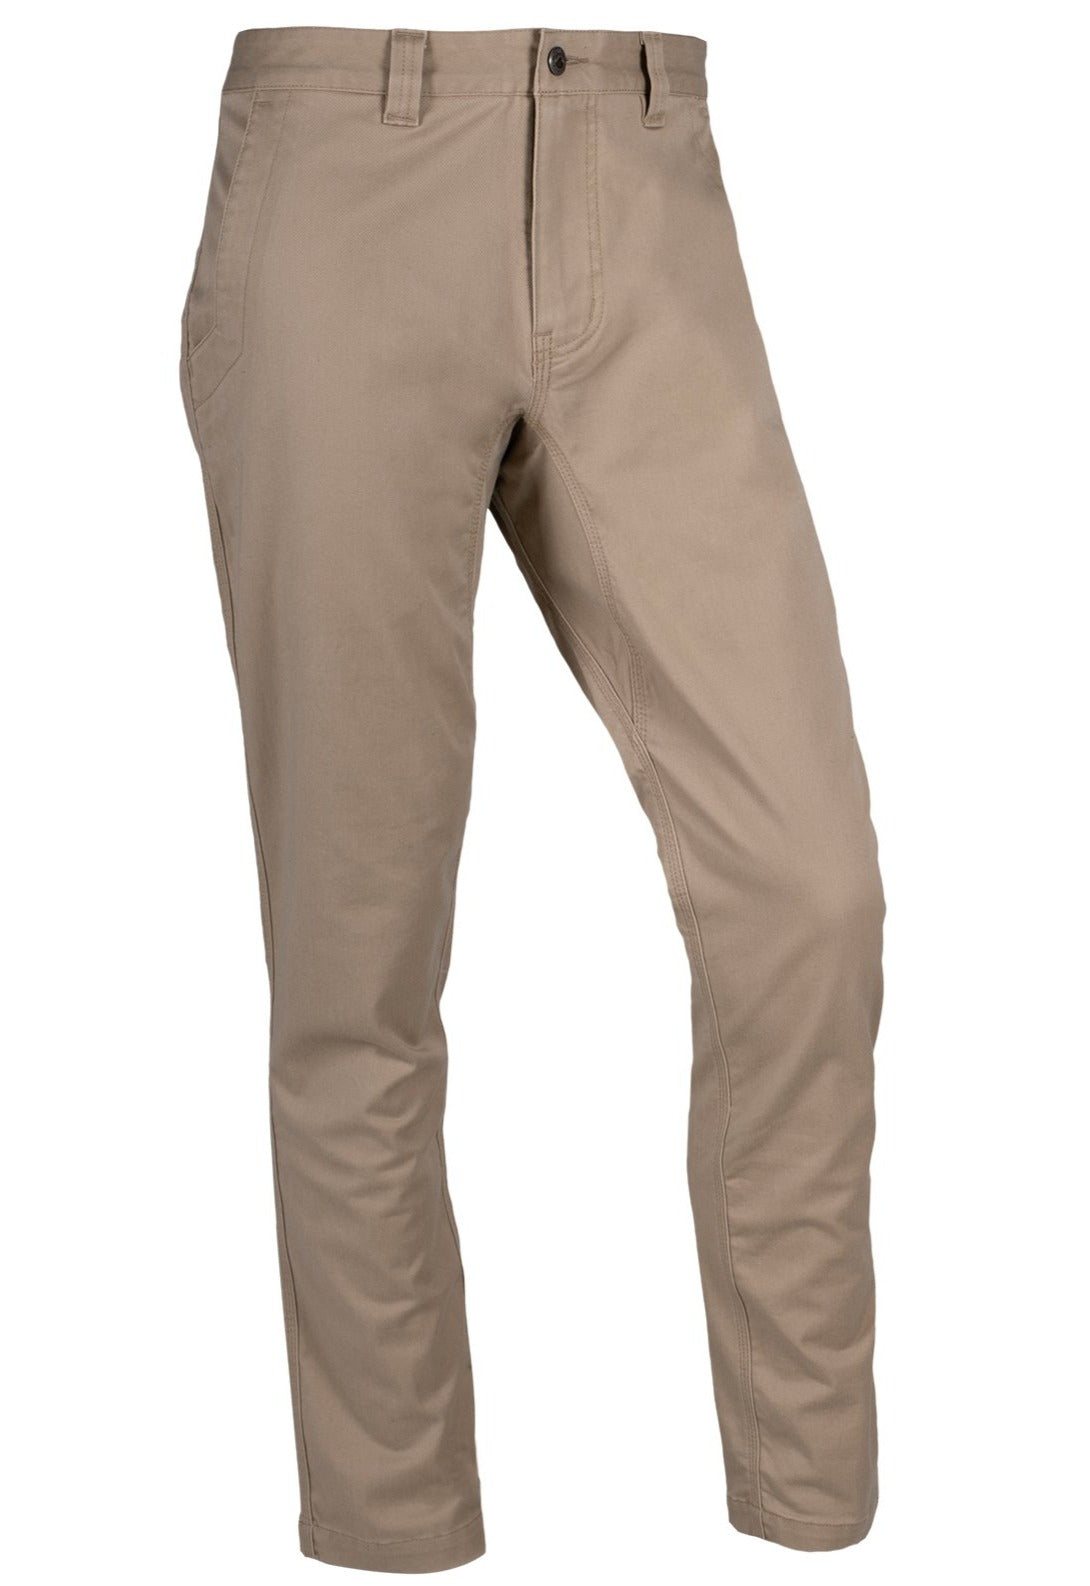 Mountain Khakis Teton Pant Modern Fit- Retro Khaki